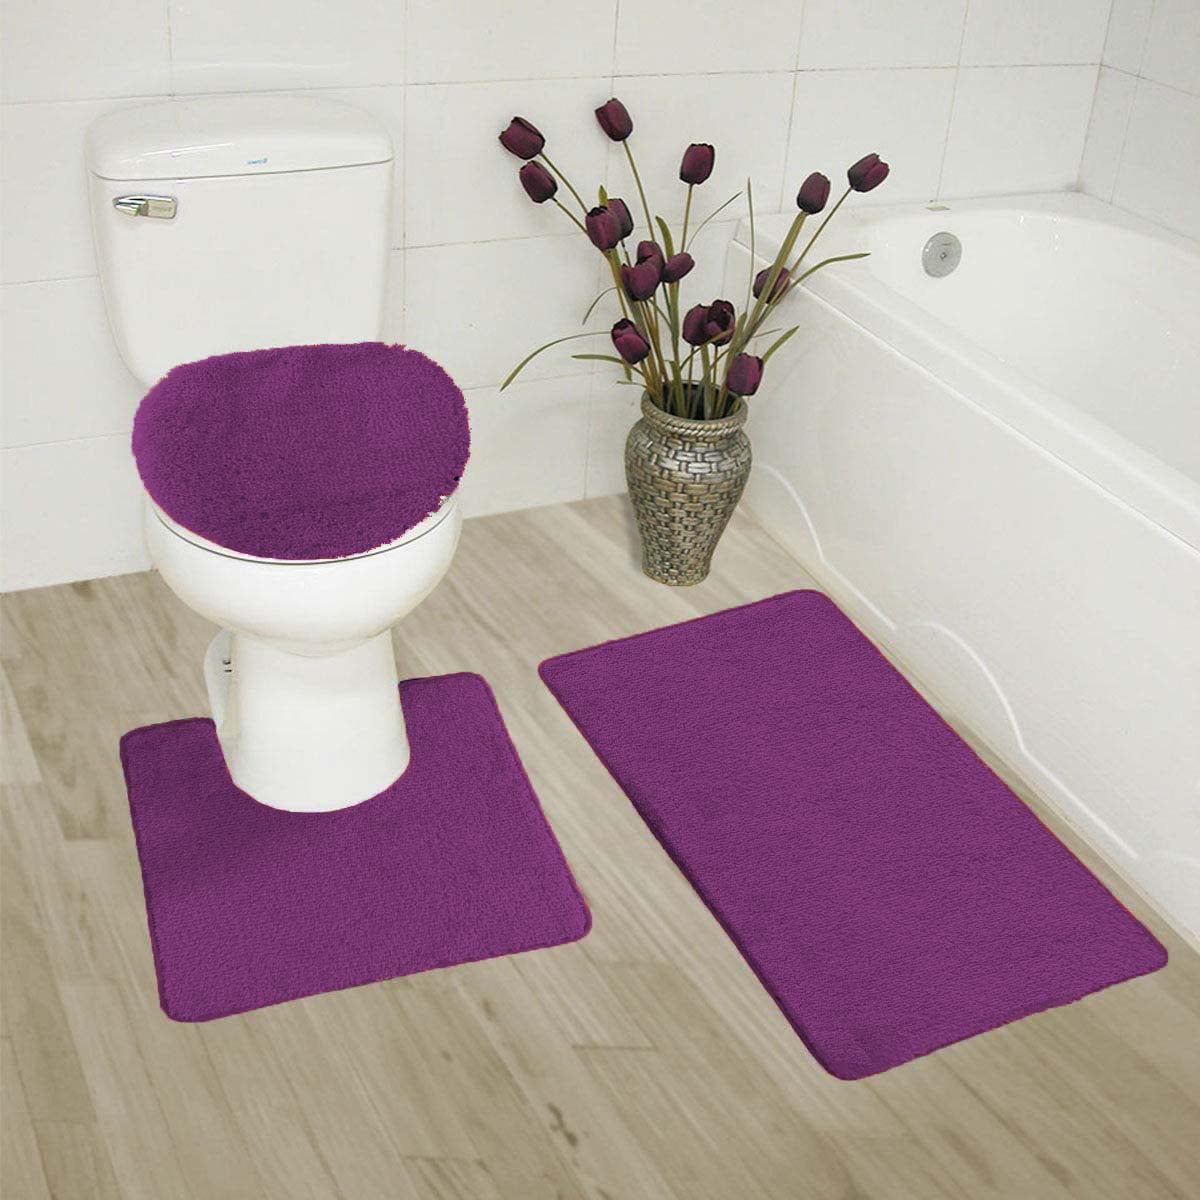 Details about   3Pcs Anti‑skid Bathroom Rug Set Non-Slip Toilet Lid Cover Bath Mat Contour Rugs 